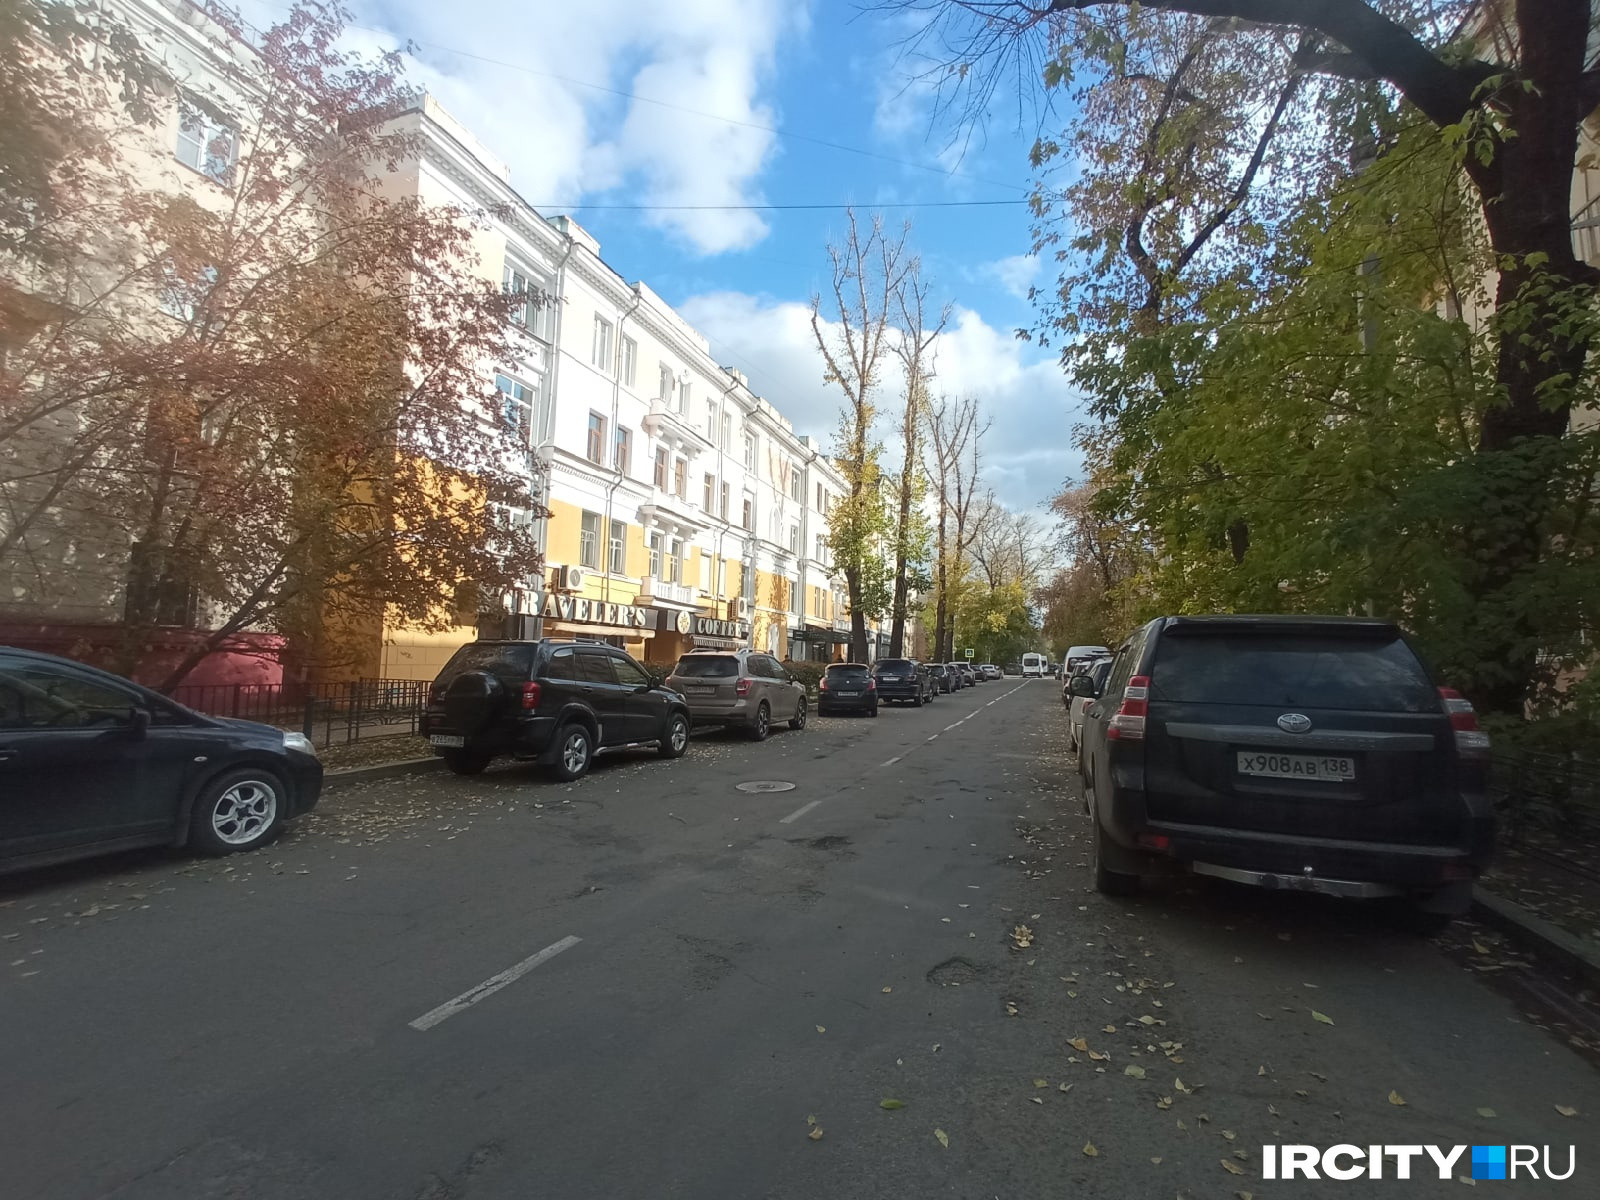 Платные парковки в Иркутске: что не так с этой идеей?